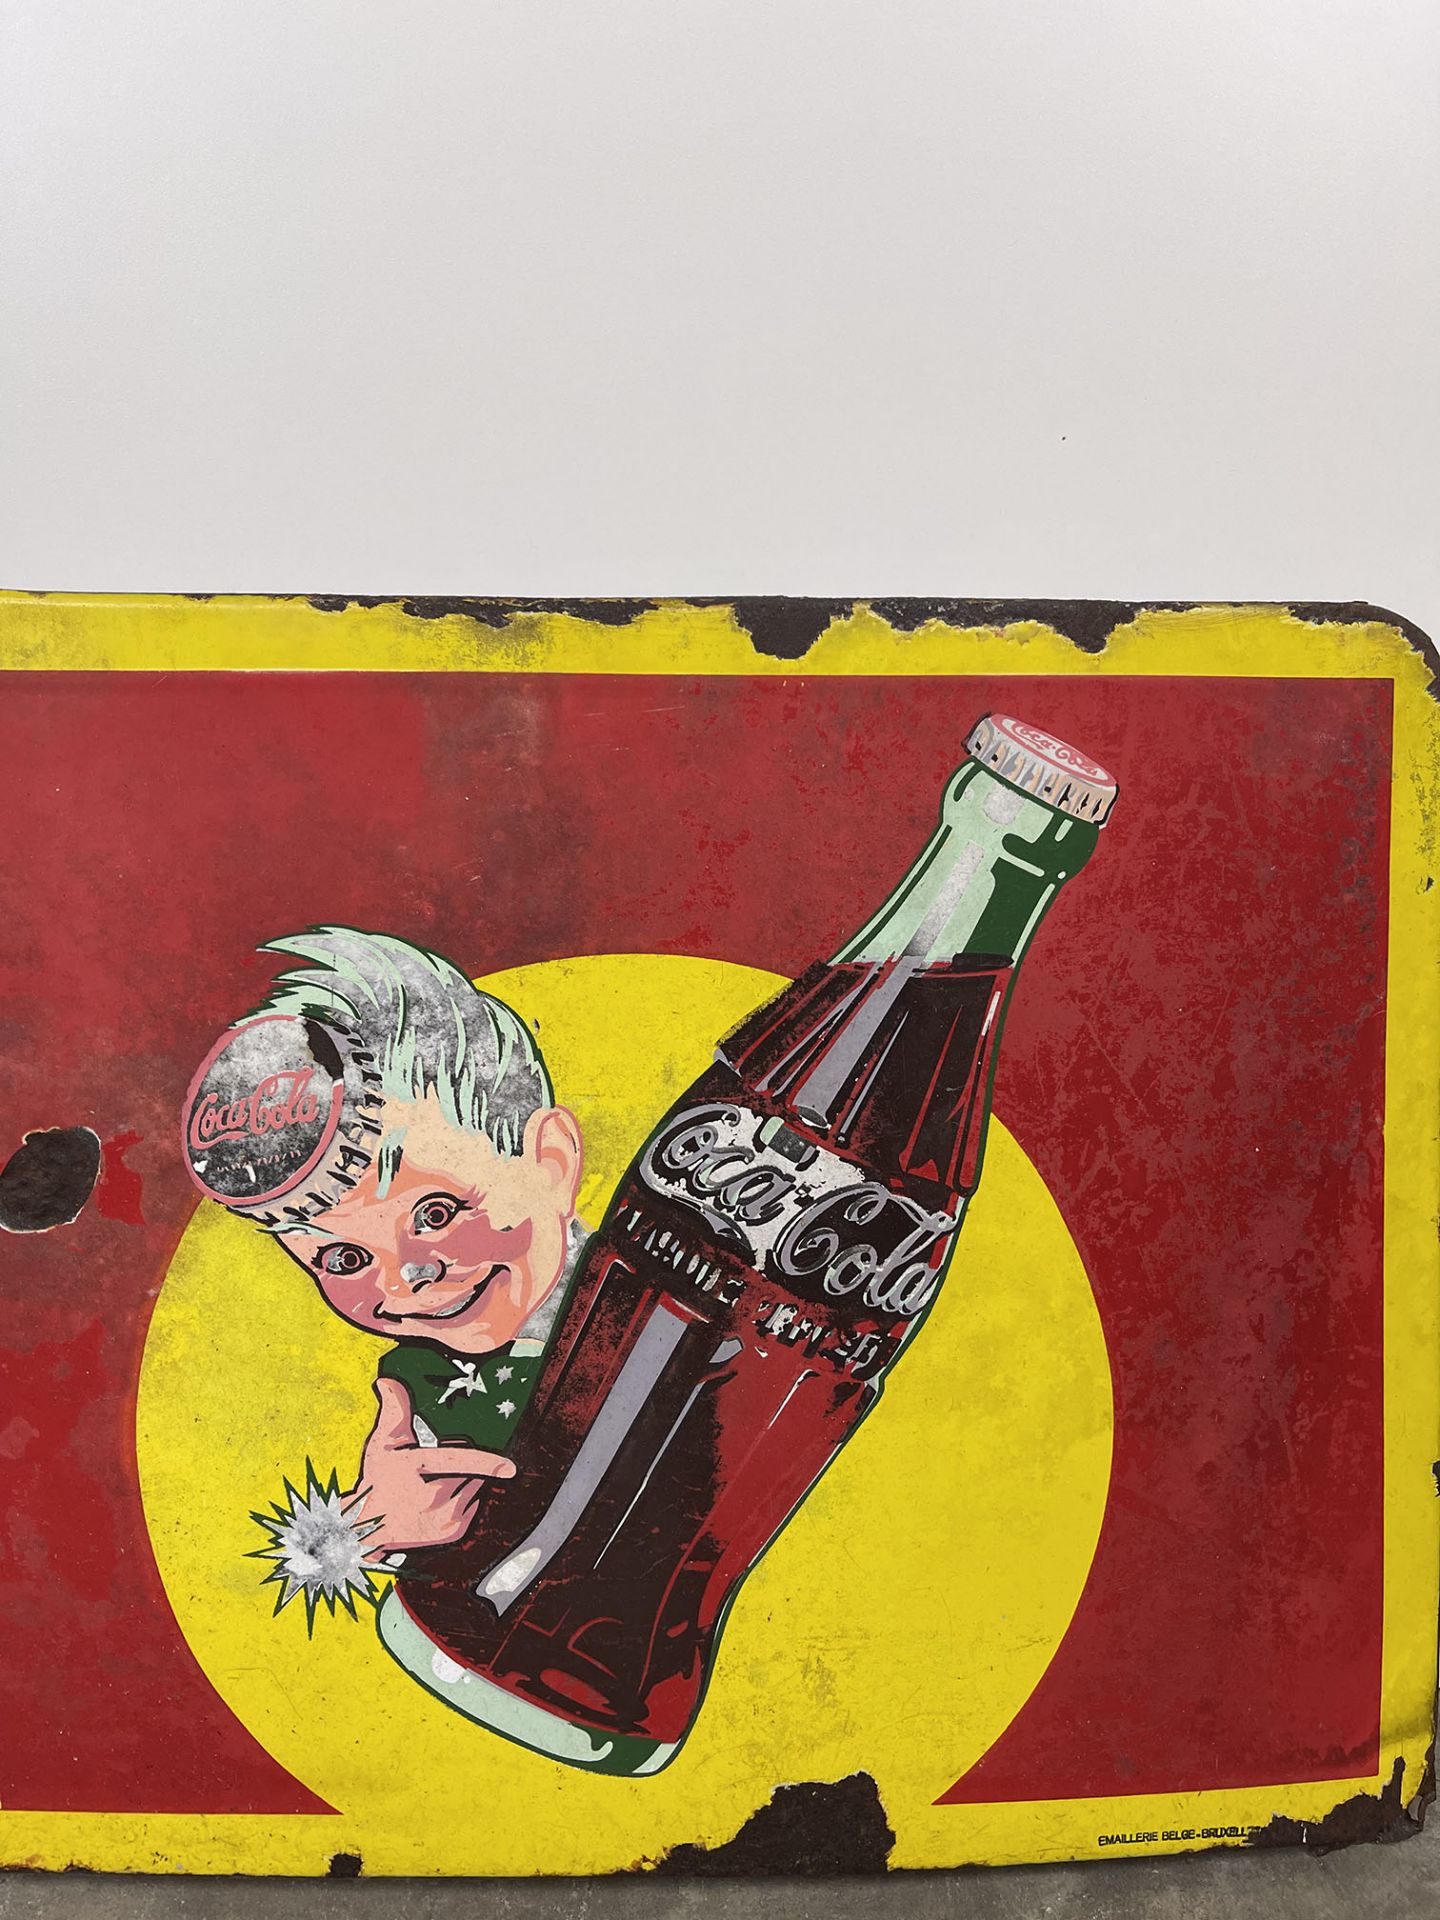 Vintage Belgian Coca-Cola Enamel Sign Featuring Coca-Cola Sprite Boy - Image 6 of 7